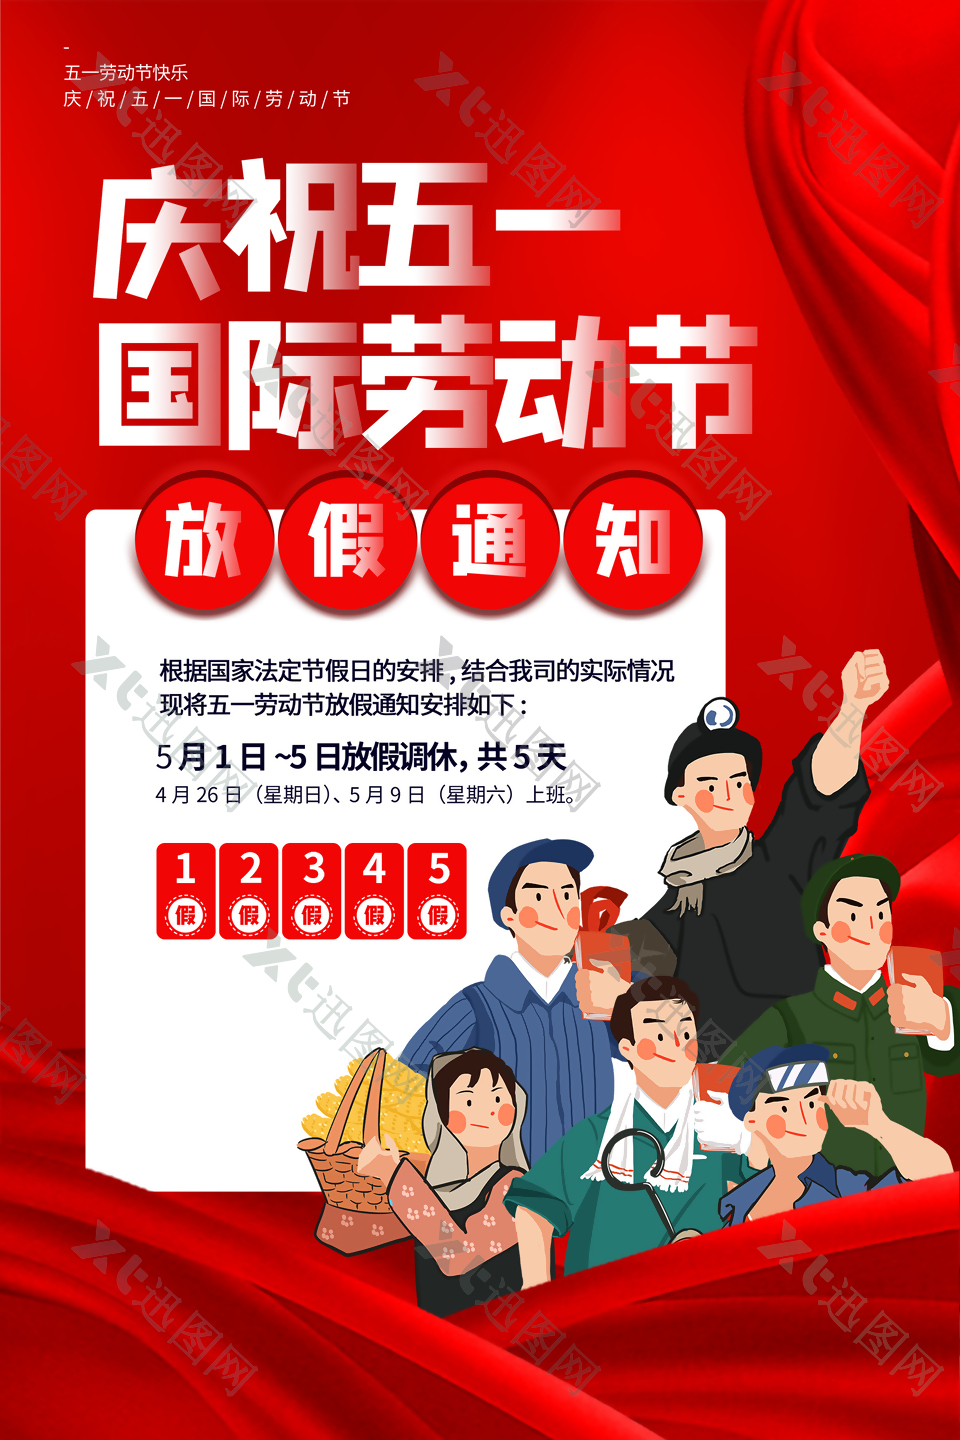 庆祝五一国际劳动节宣传海报